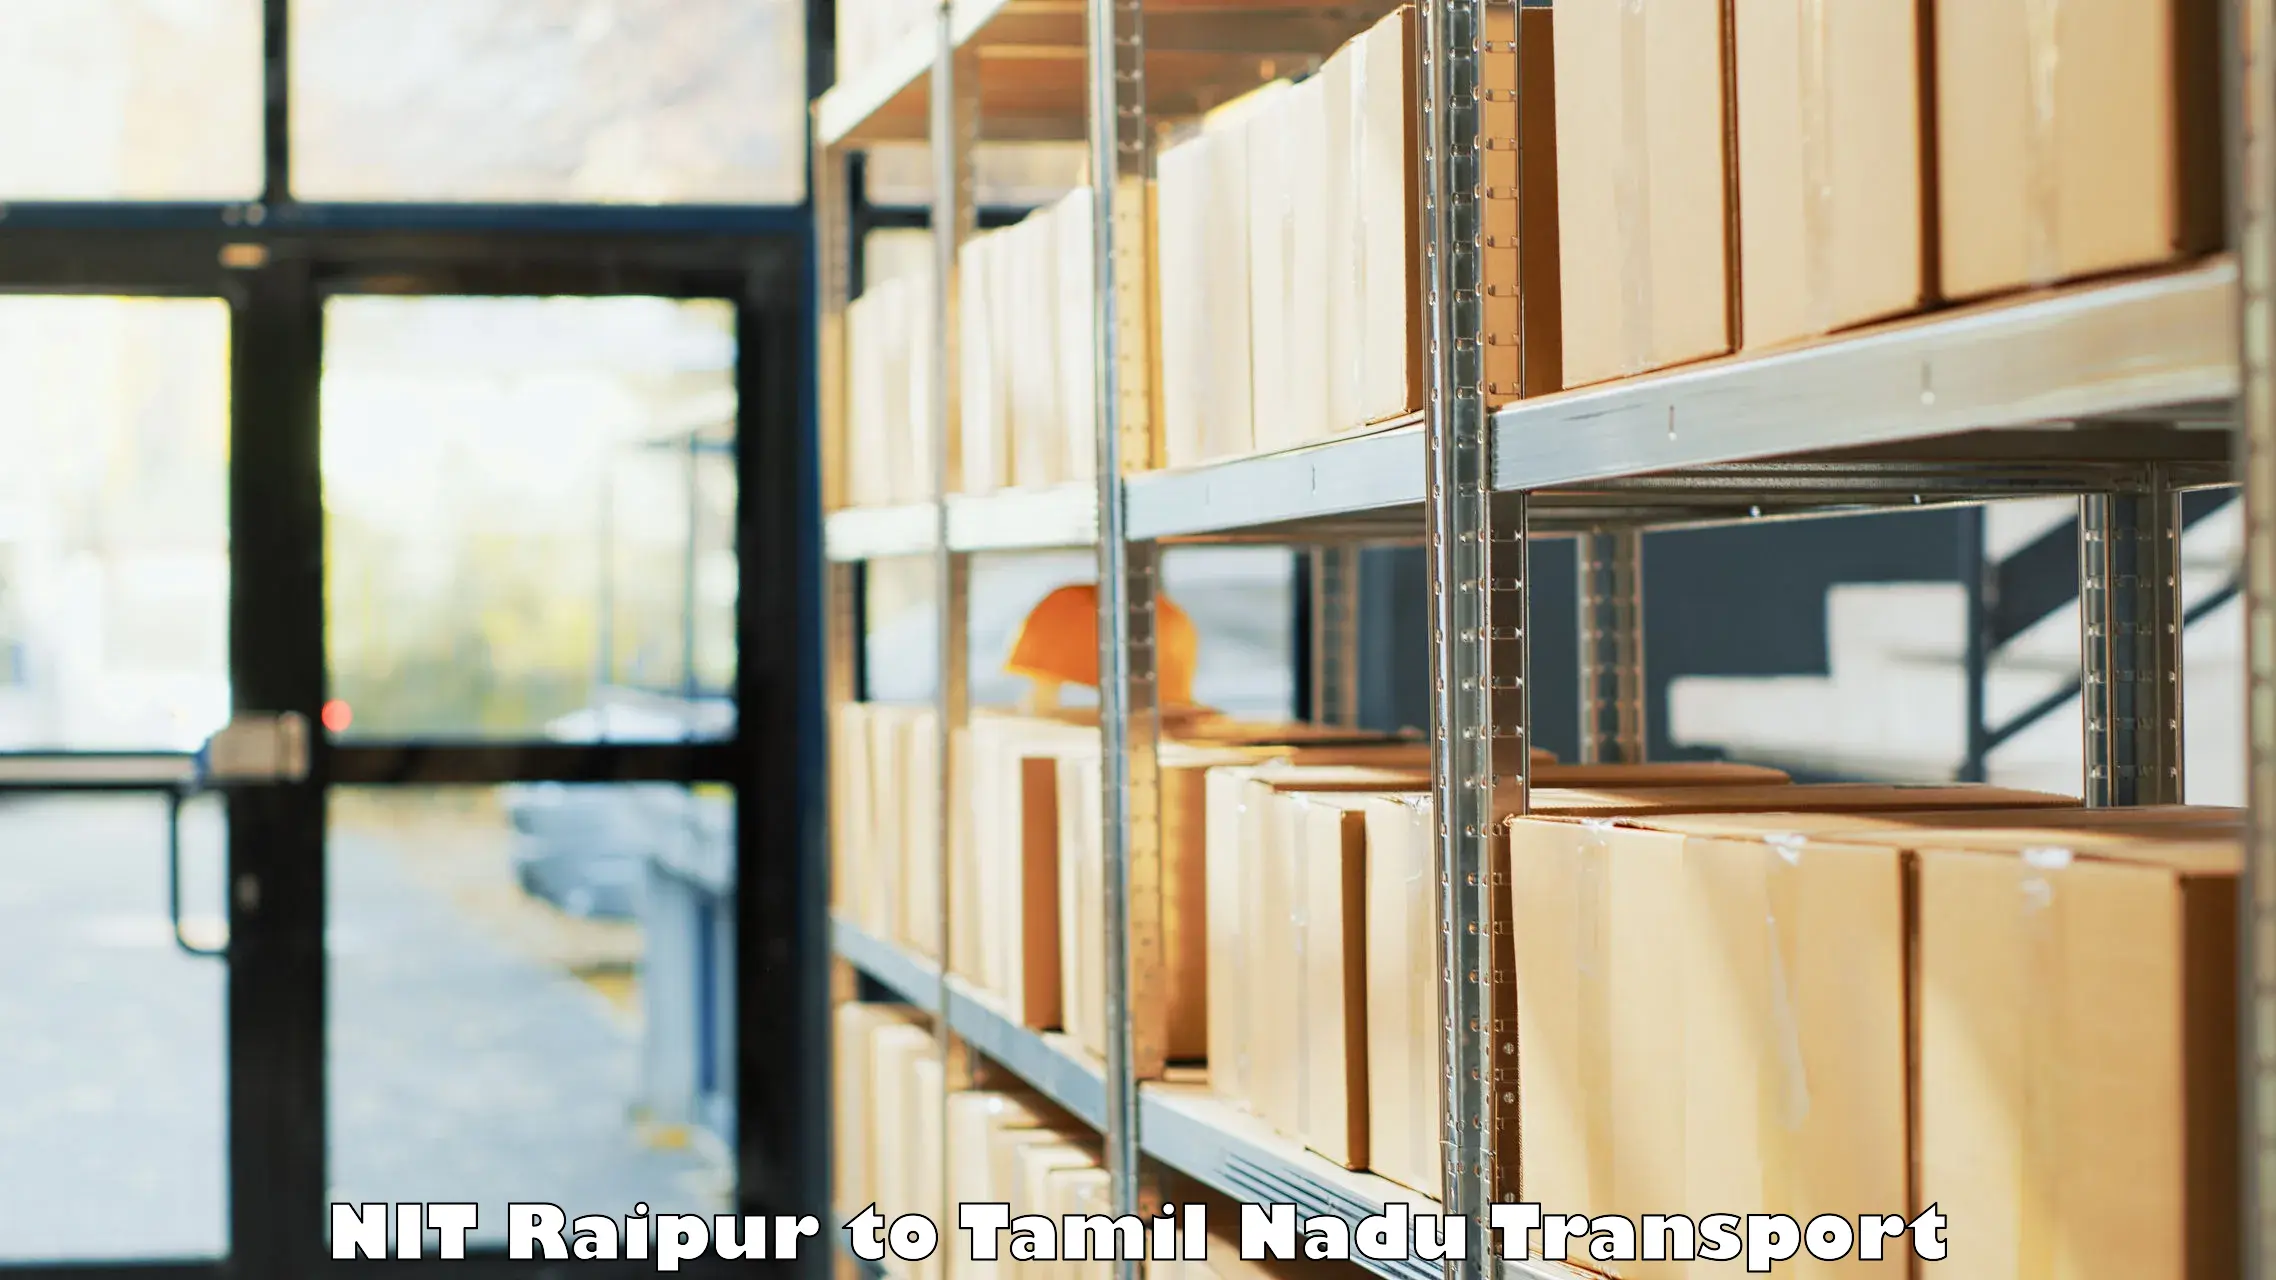 Door to door transport services NIT Raipur to Tamil Nadu